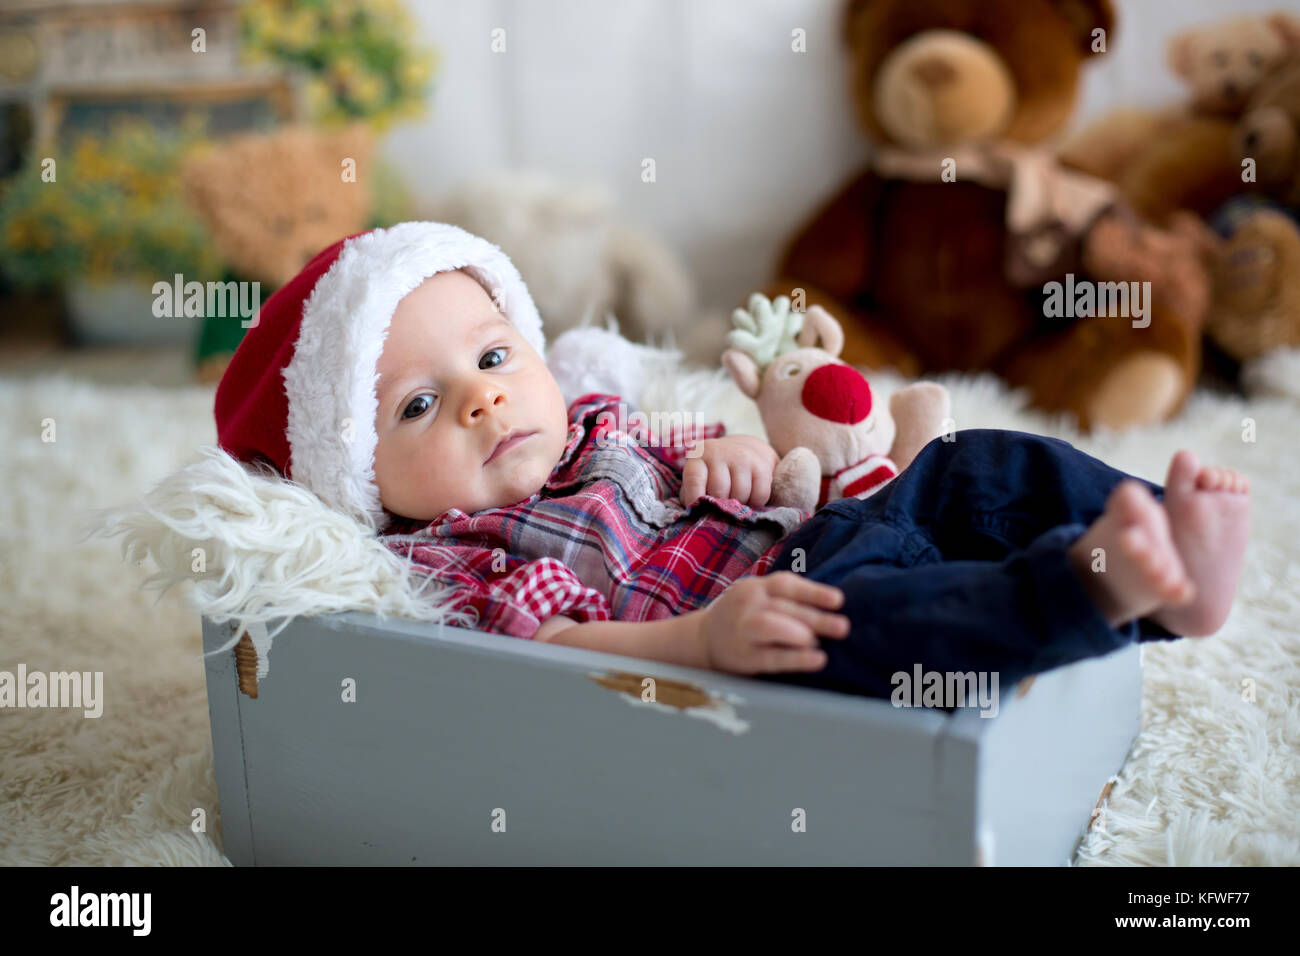 Retrato de Navidad poco lindo bebé recién nacido varón, vestido con ropa de  navidad y llevar gorro de Papá Noel, Foto de estudio, horario de invierno  Fotografía de stock - Alamy